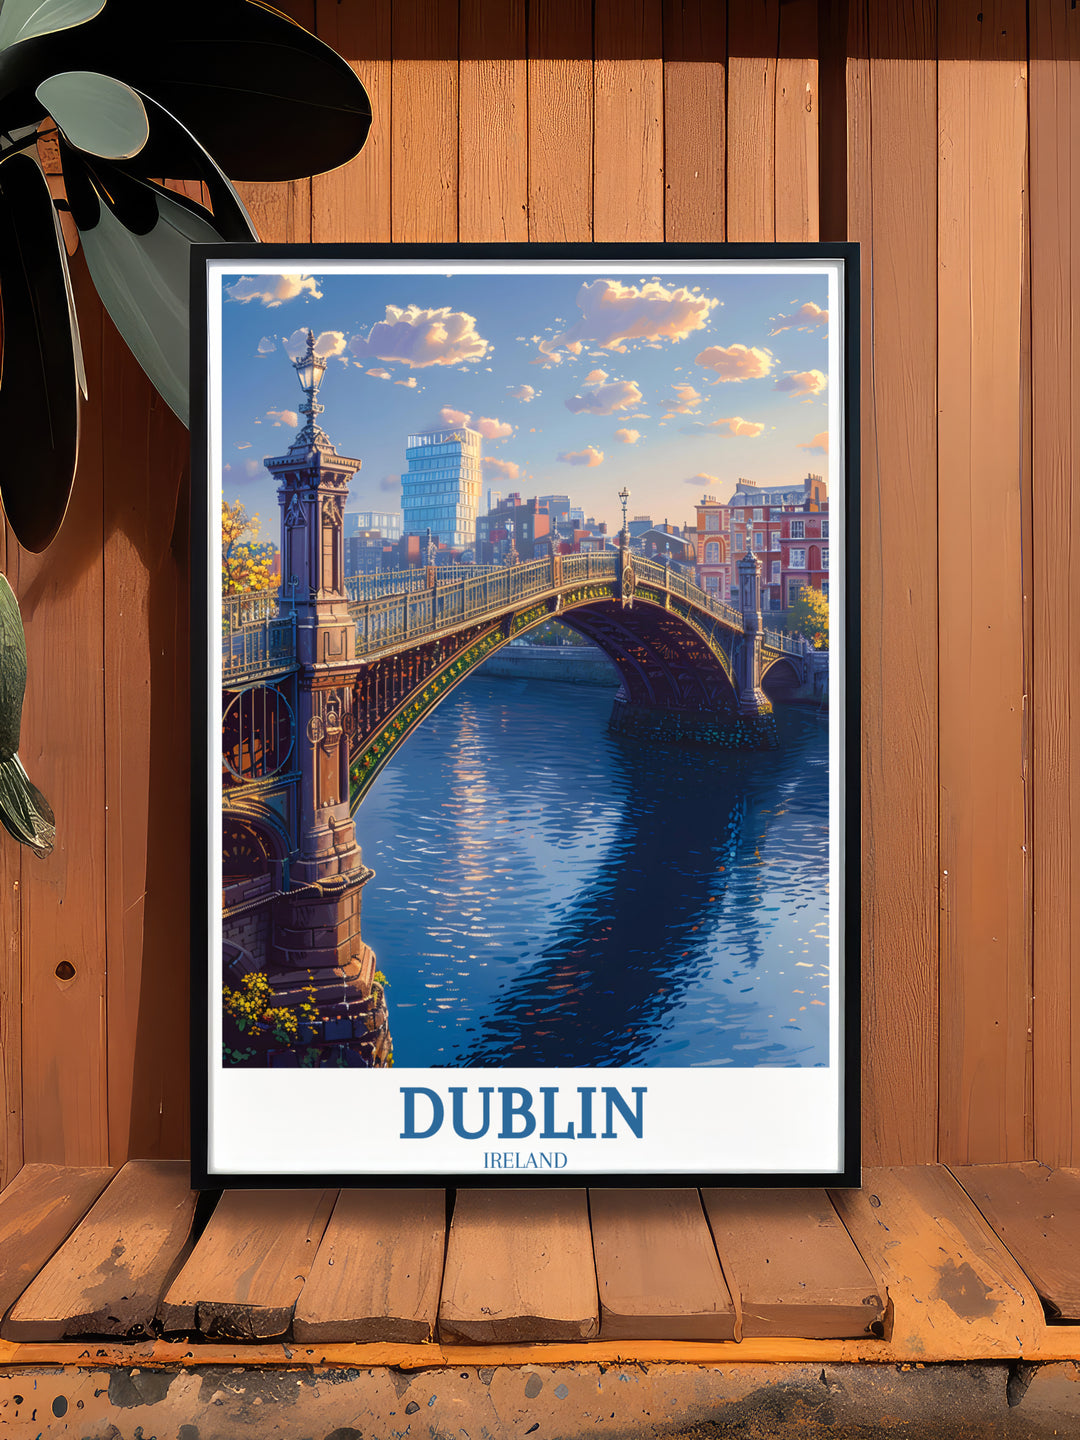 Découvrez le charme de Dublin avec les affiches Ha'penny Bridge et une décoration murale élégante